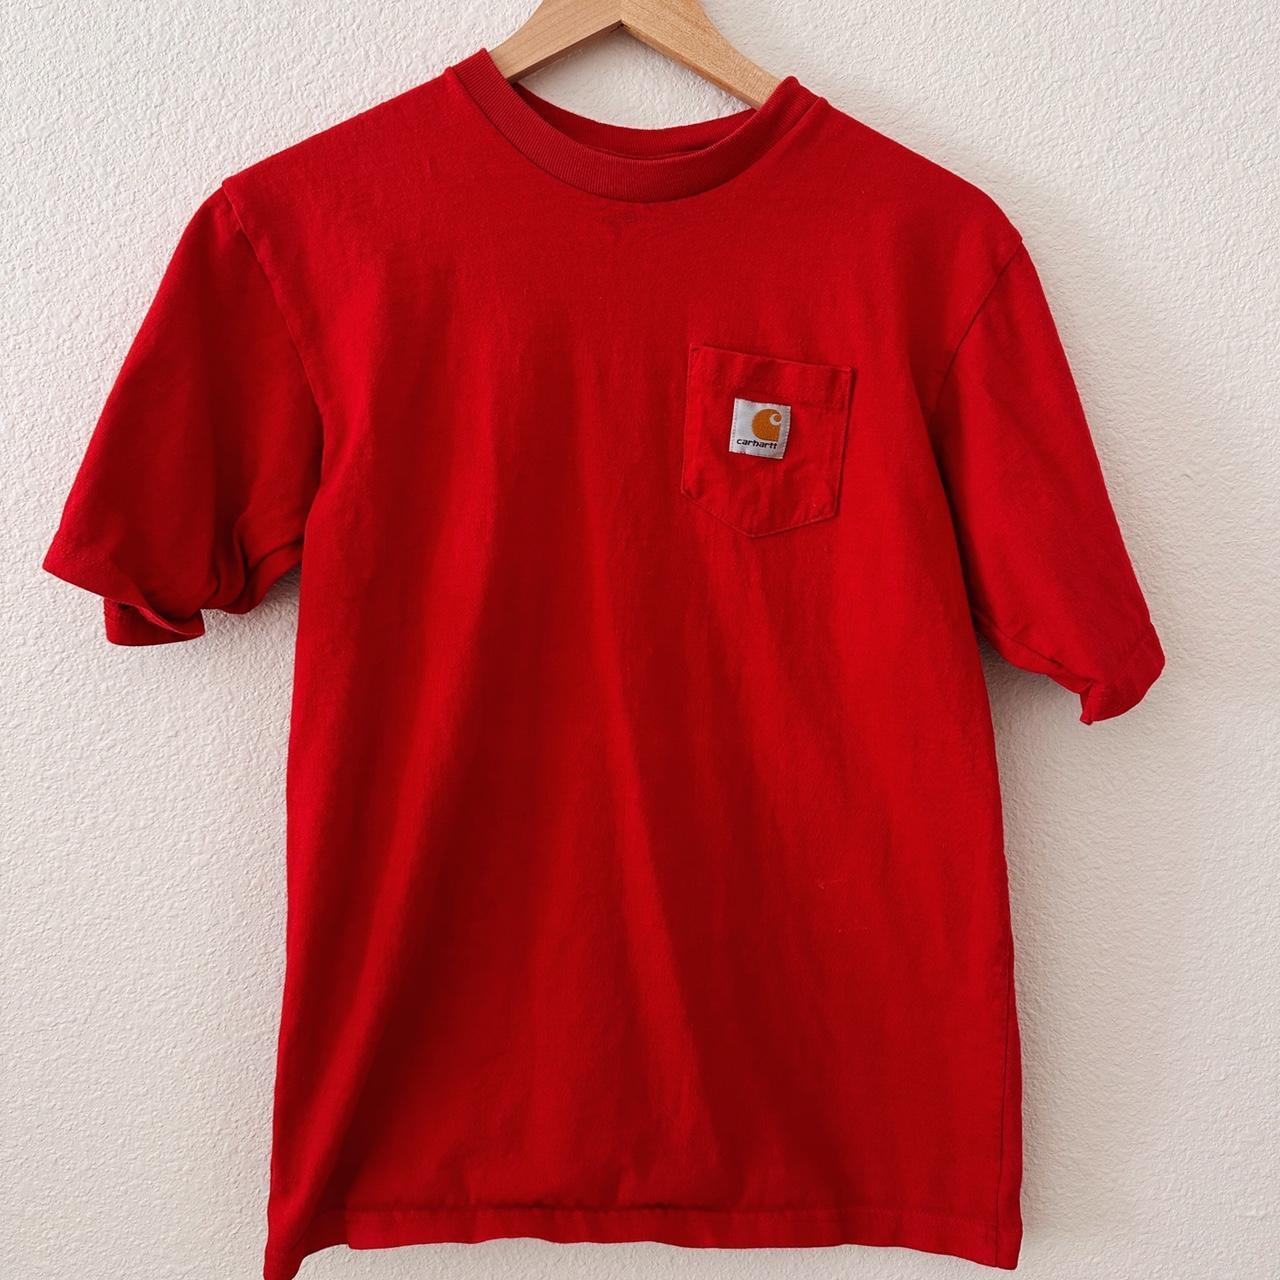 Carhartt Red Pocket T-Shirt size large #carhartt... - Depop